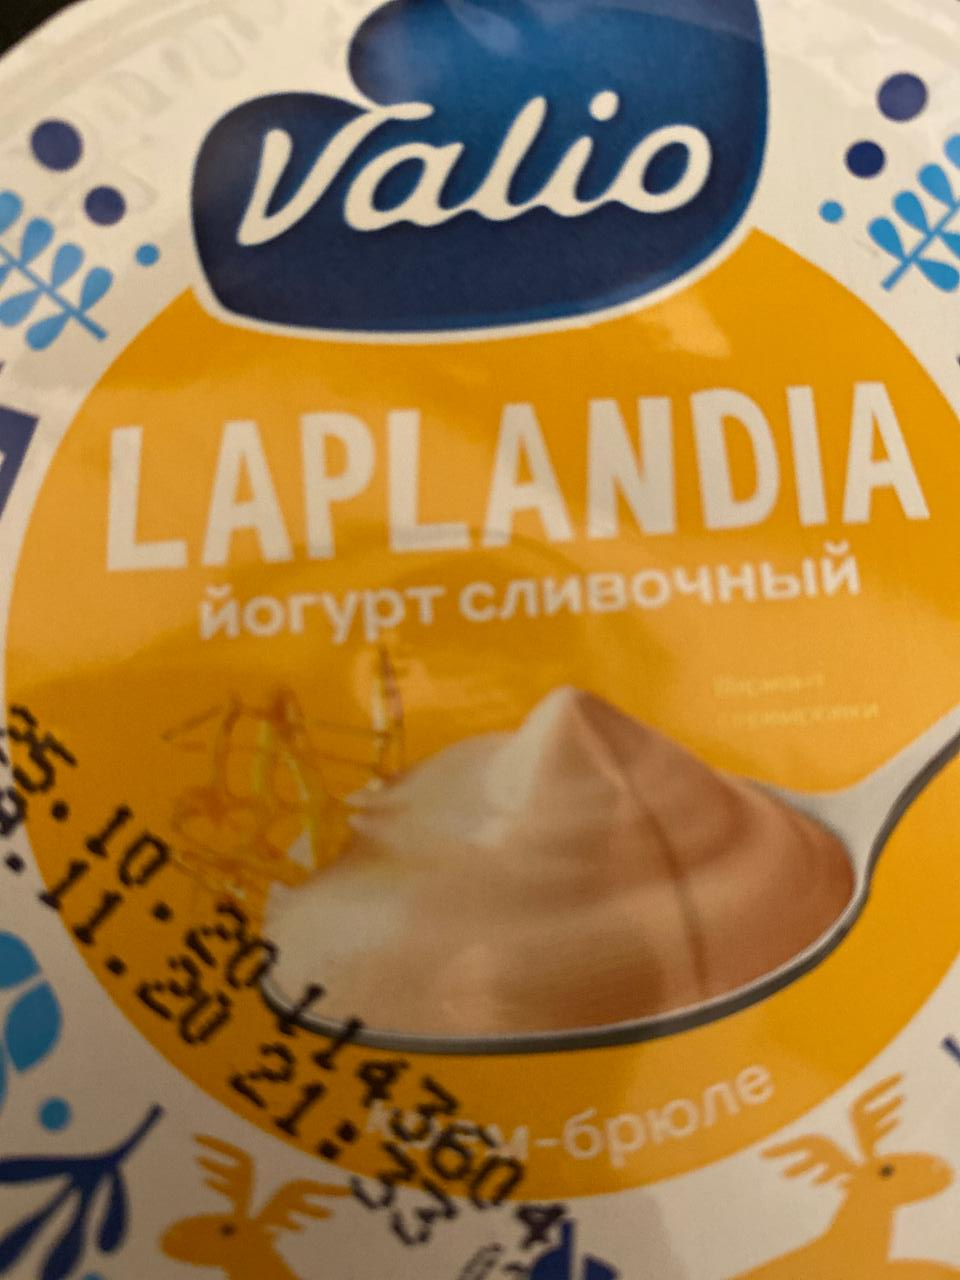 Фото - Йогурт Сливочный со вкусом крем-брюле Laplandia Valio